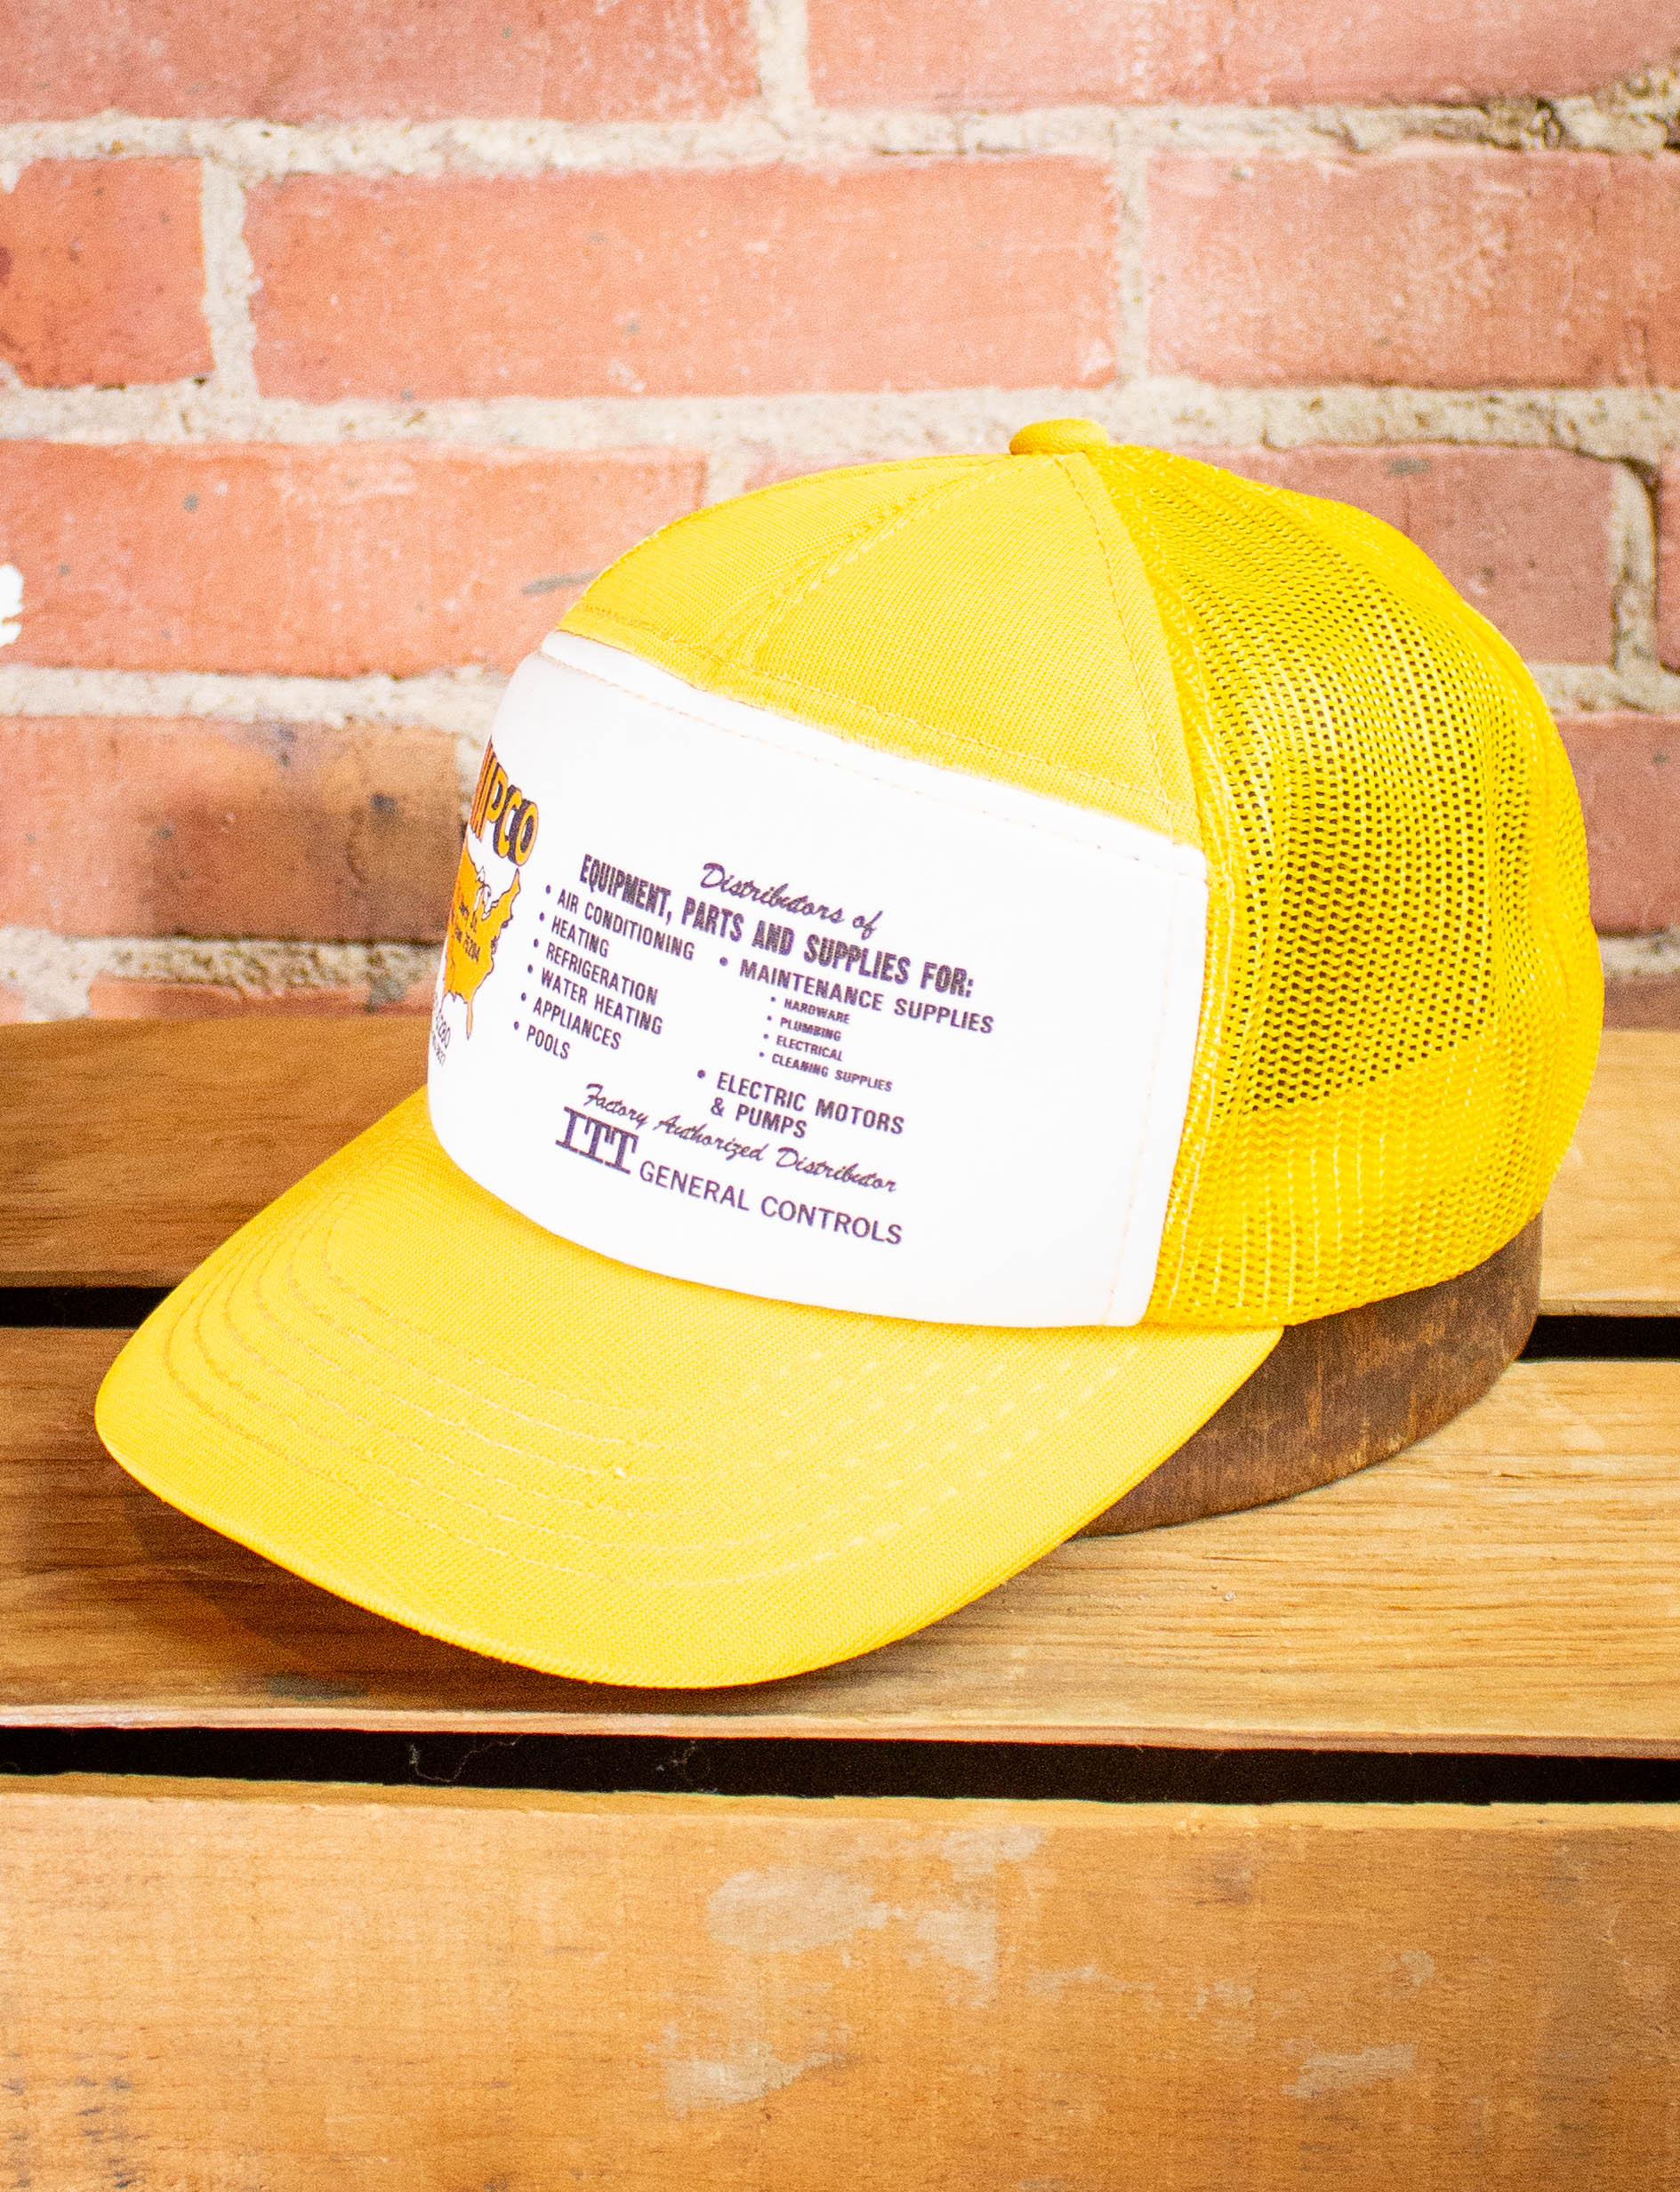 Vintage NAPCO Yellow Trucker Hat